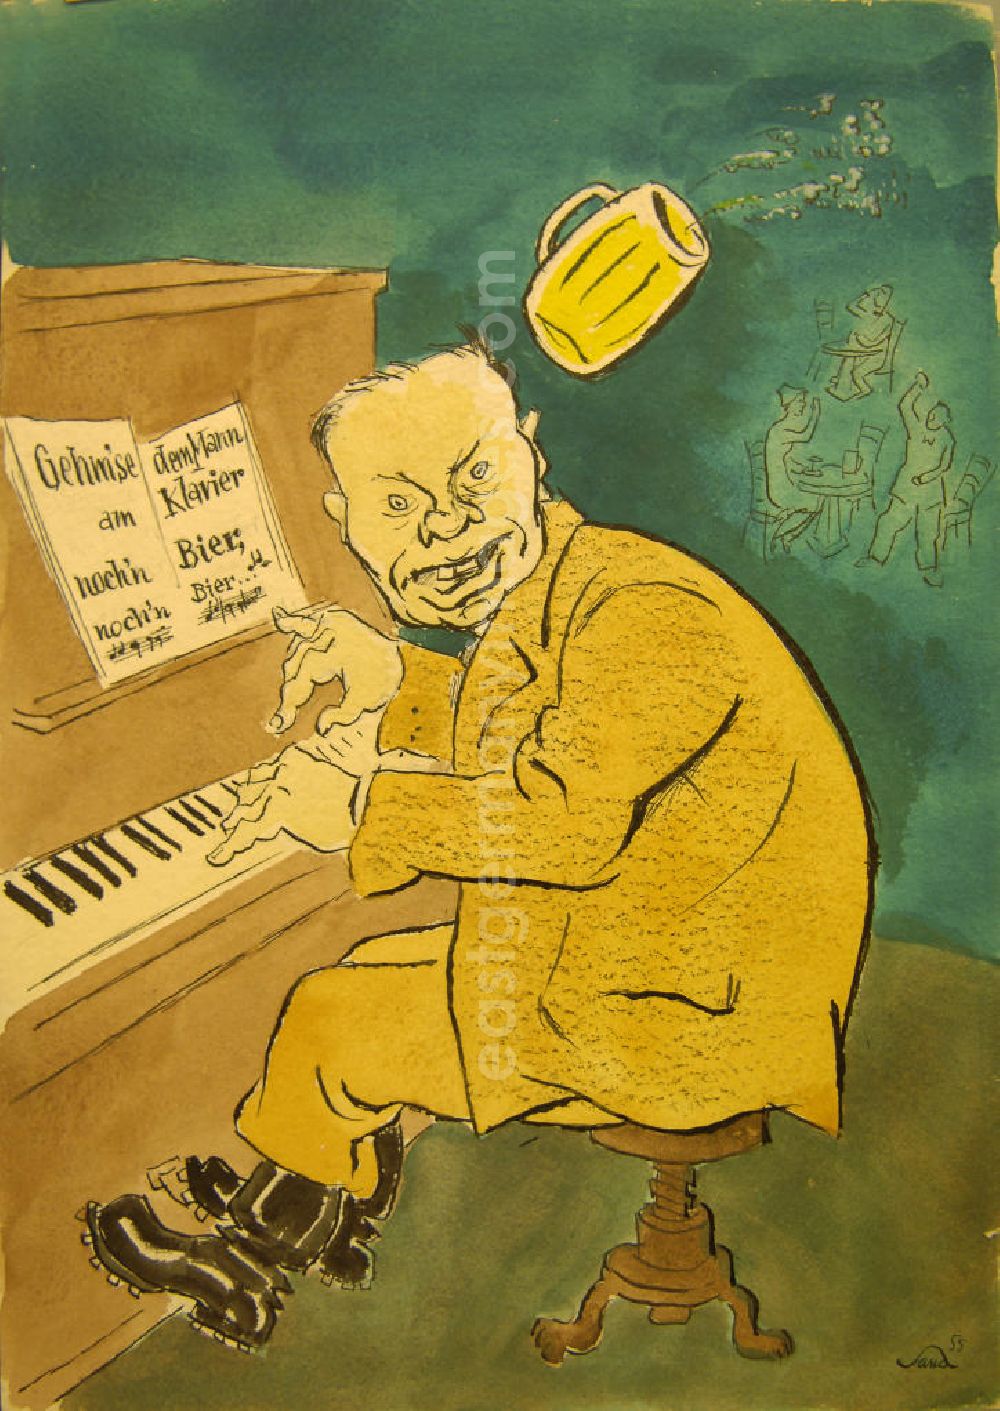 Berlin: Zeichnung von Herbert Sandberg Gehm'se dem Mann am Klavier noch'n Bier, noch'n Bier... aus dem Jahr 1955, 24,